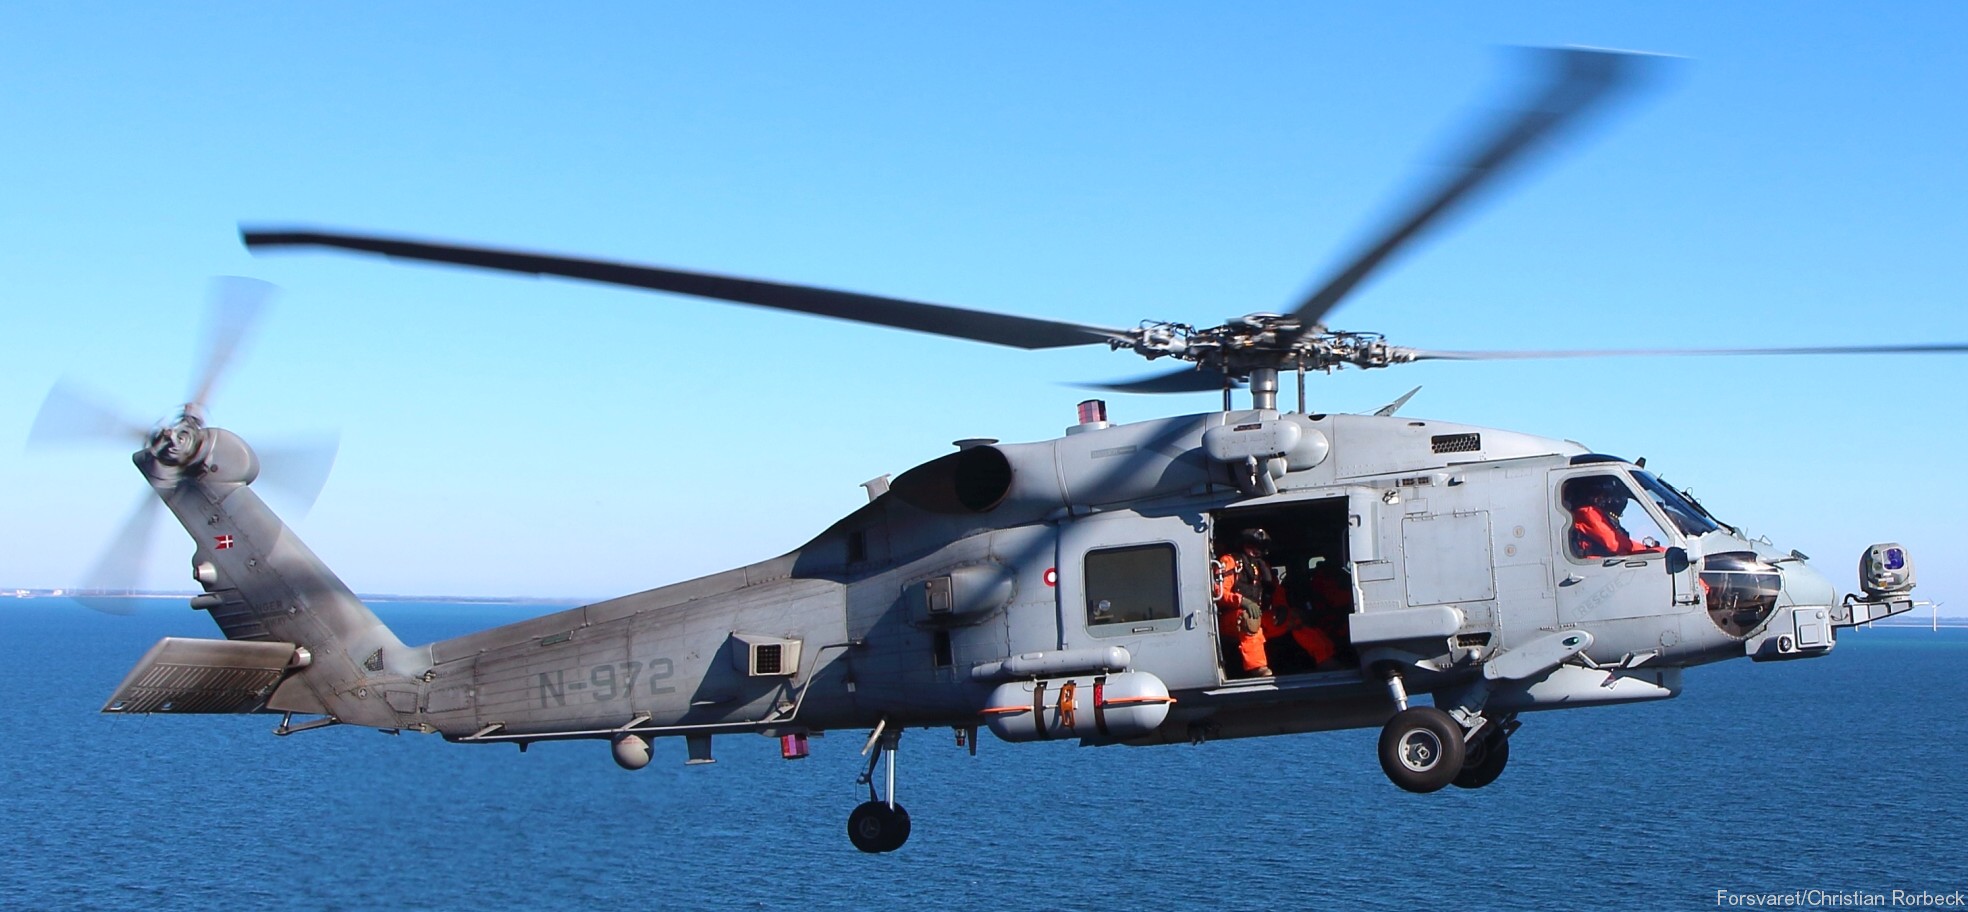 mh-60r seahawk royal danish navy air force flyvevåbnet kongelige danske marine sikorsky helicopter 723 eskadrille squadron karup 15